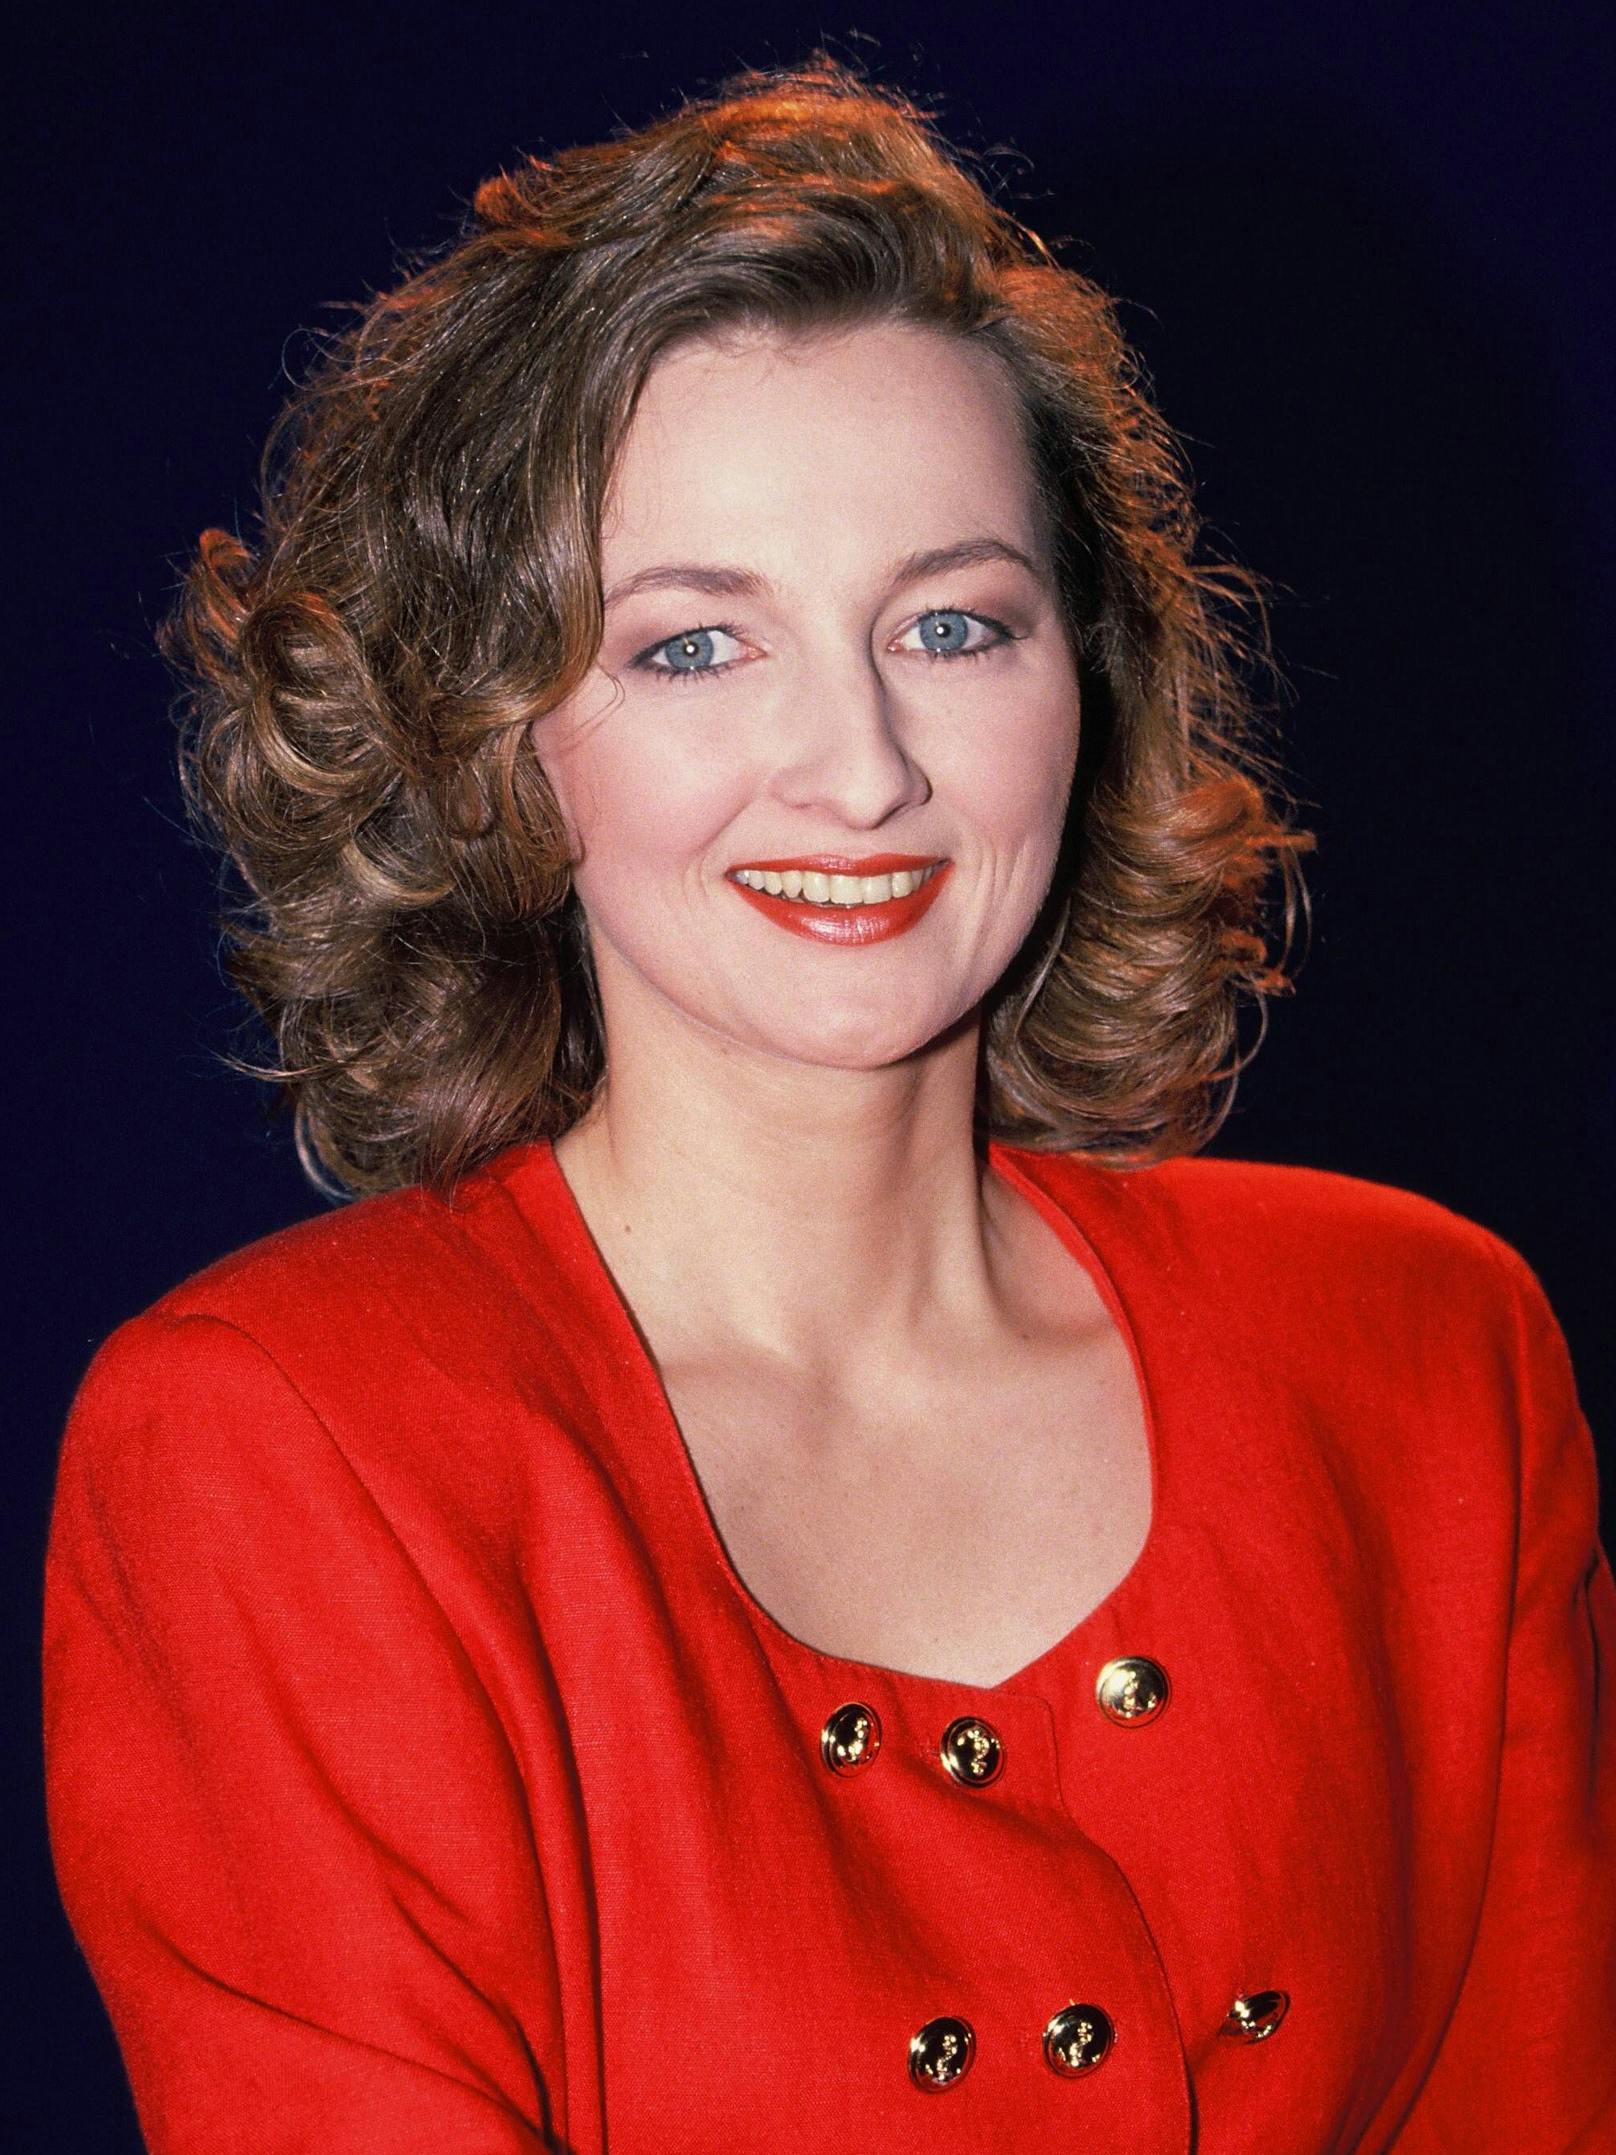 Frauke Ludowig als Moderatorin 1992 mit dunkler Lockenfrisur.